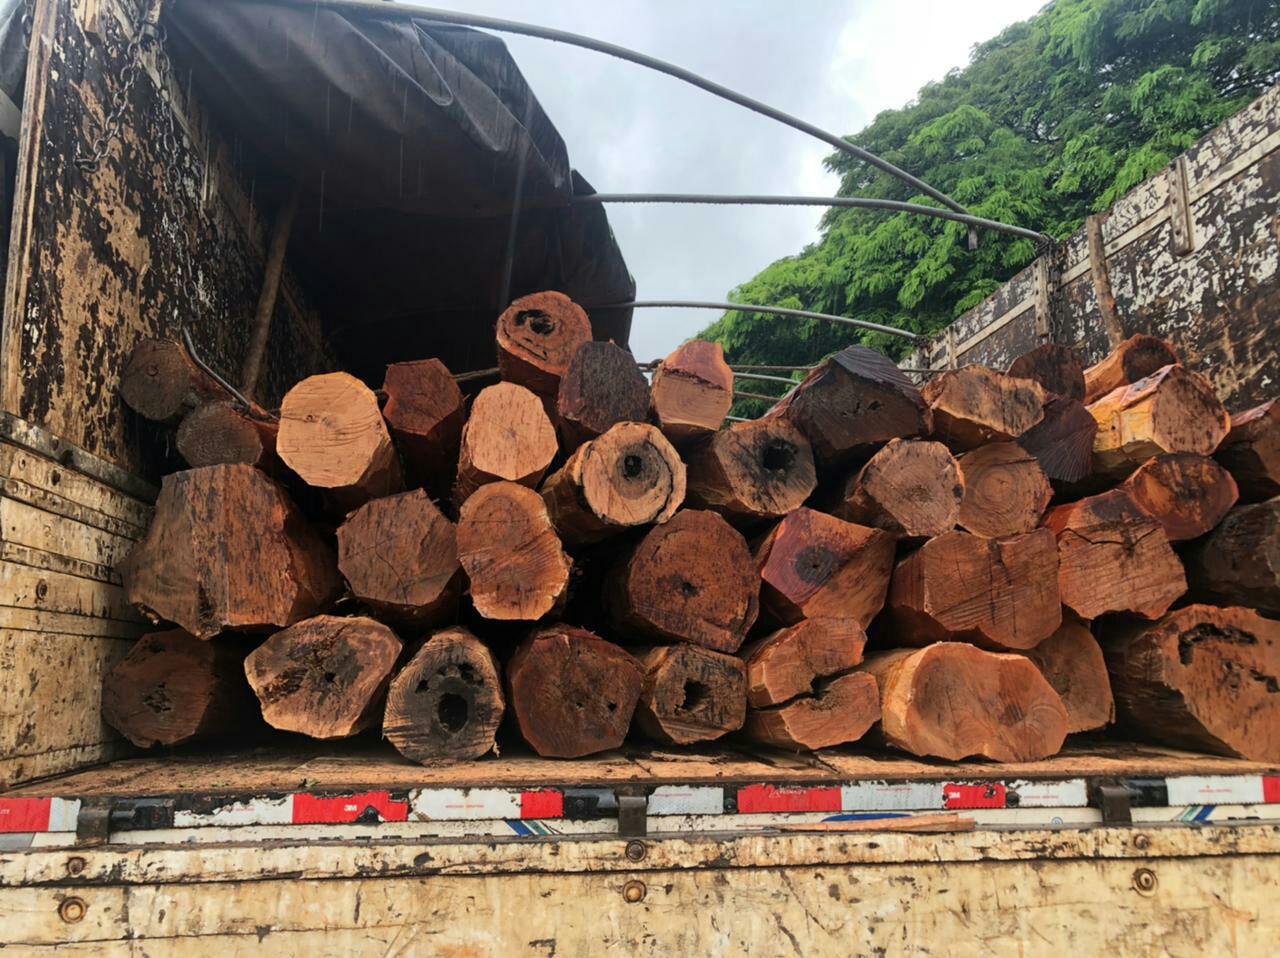 Carga ilegal de madeira, avaliada em R$200 mil, é apreendida em Quirinópolis